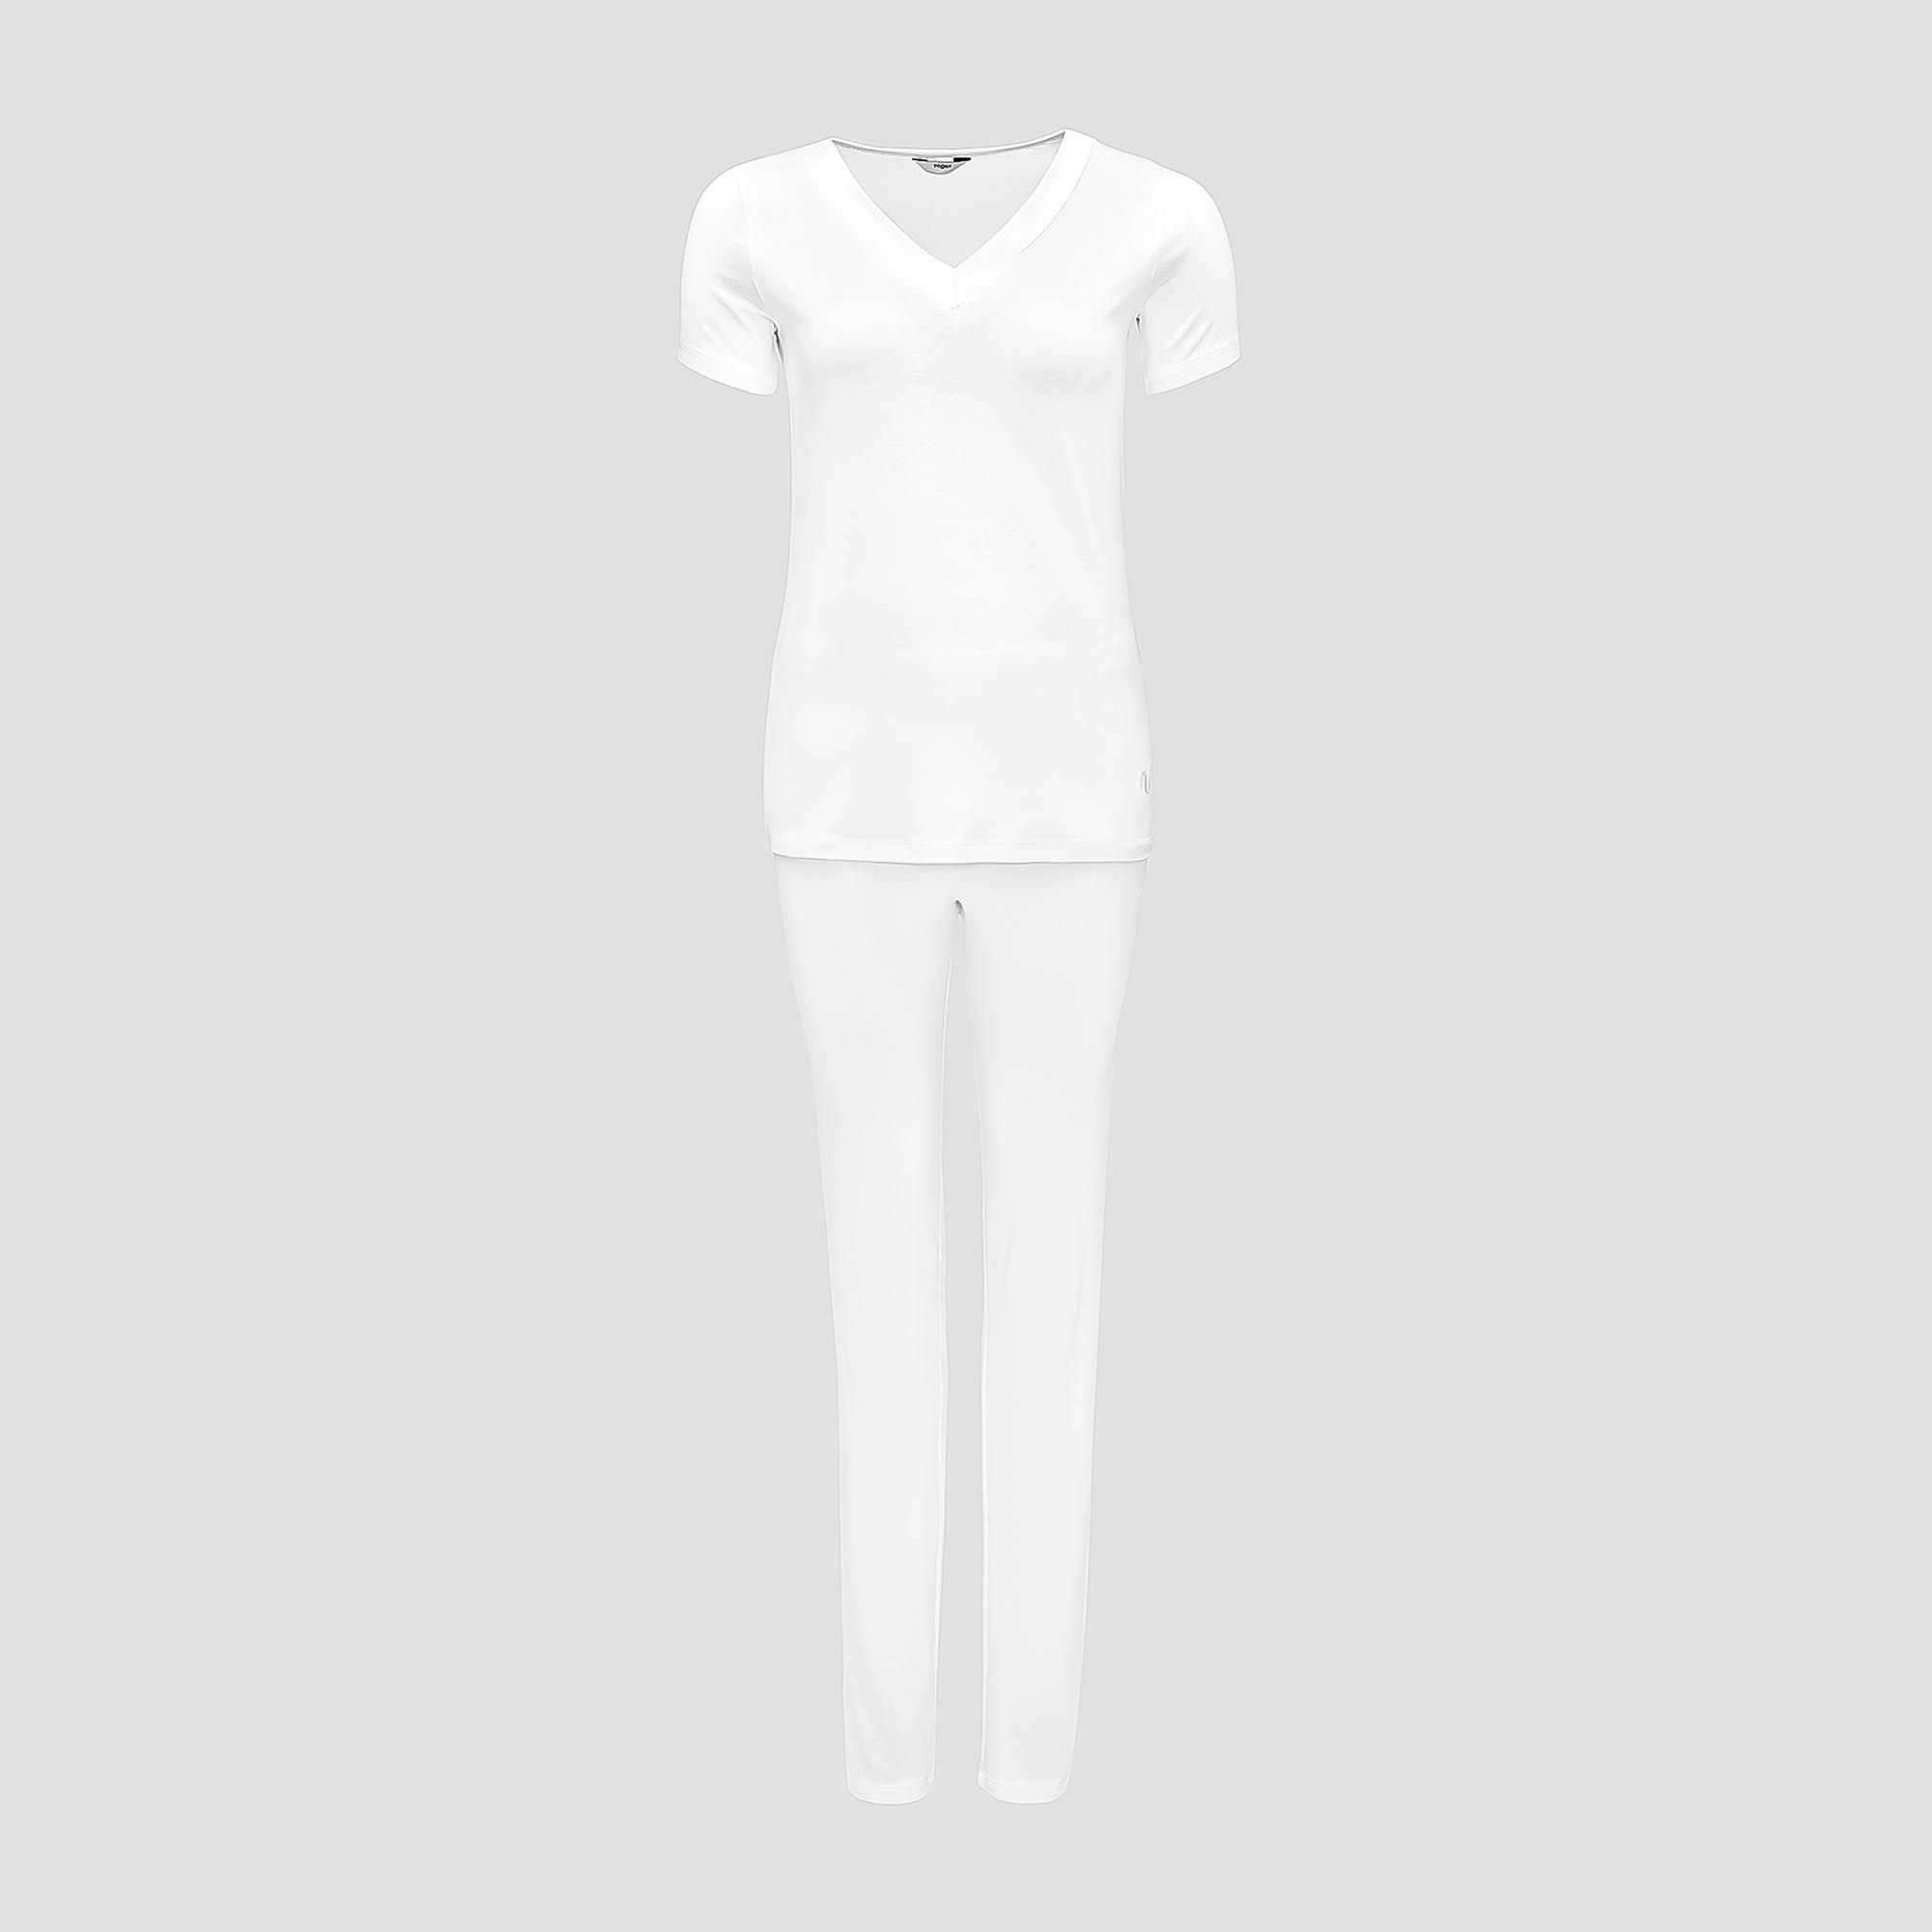 Пижама Togas Ингелла белая женская S(44) 2 предмета жен пижама с шортами инь янь белый р 46